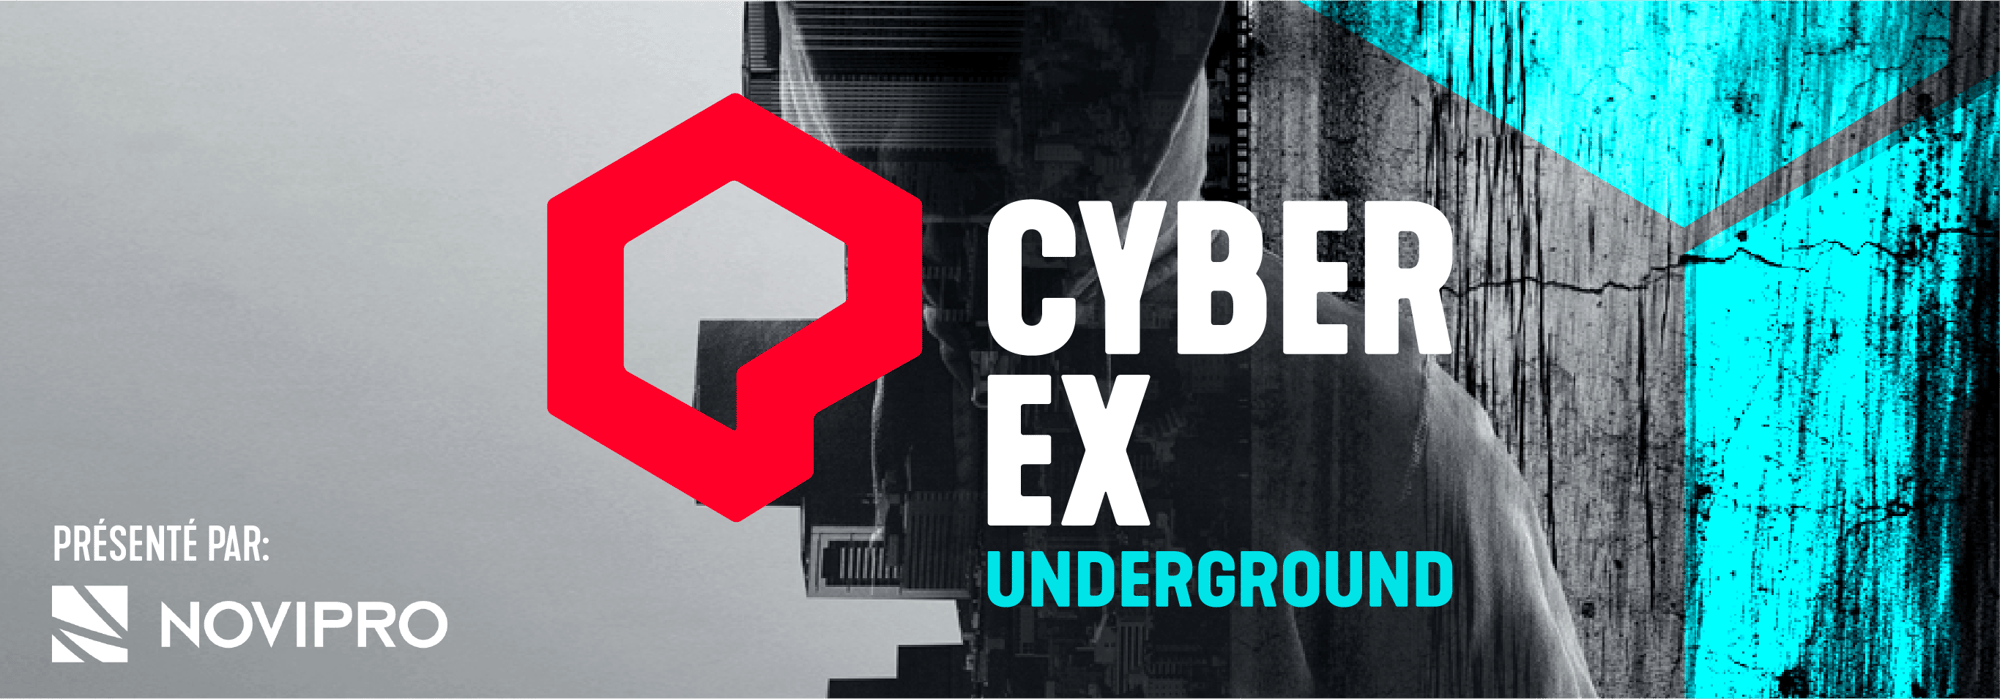 Cyberex underground_landingpage_header (1)